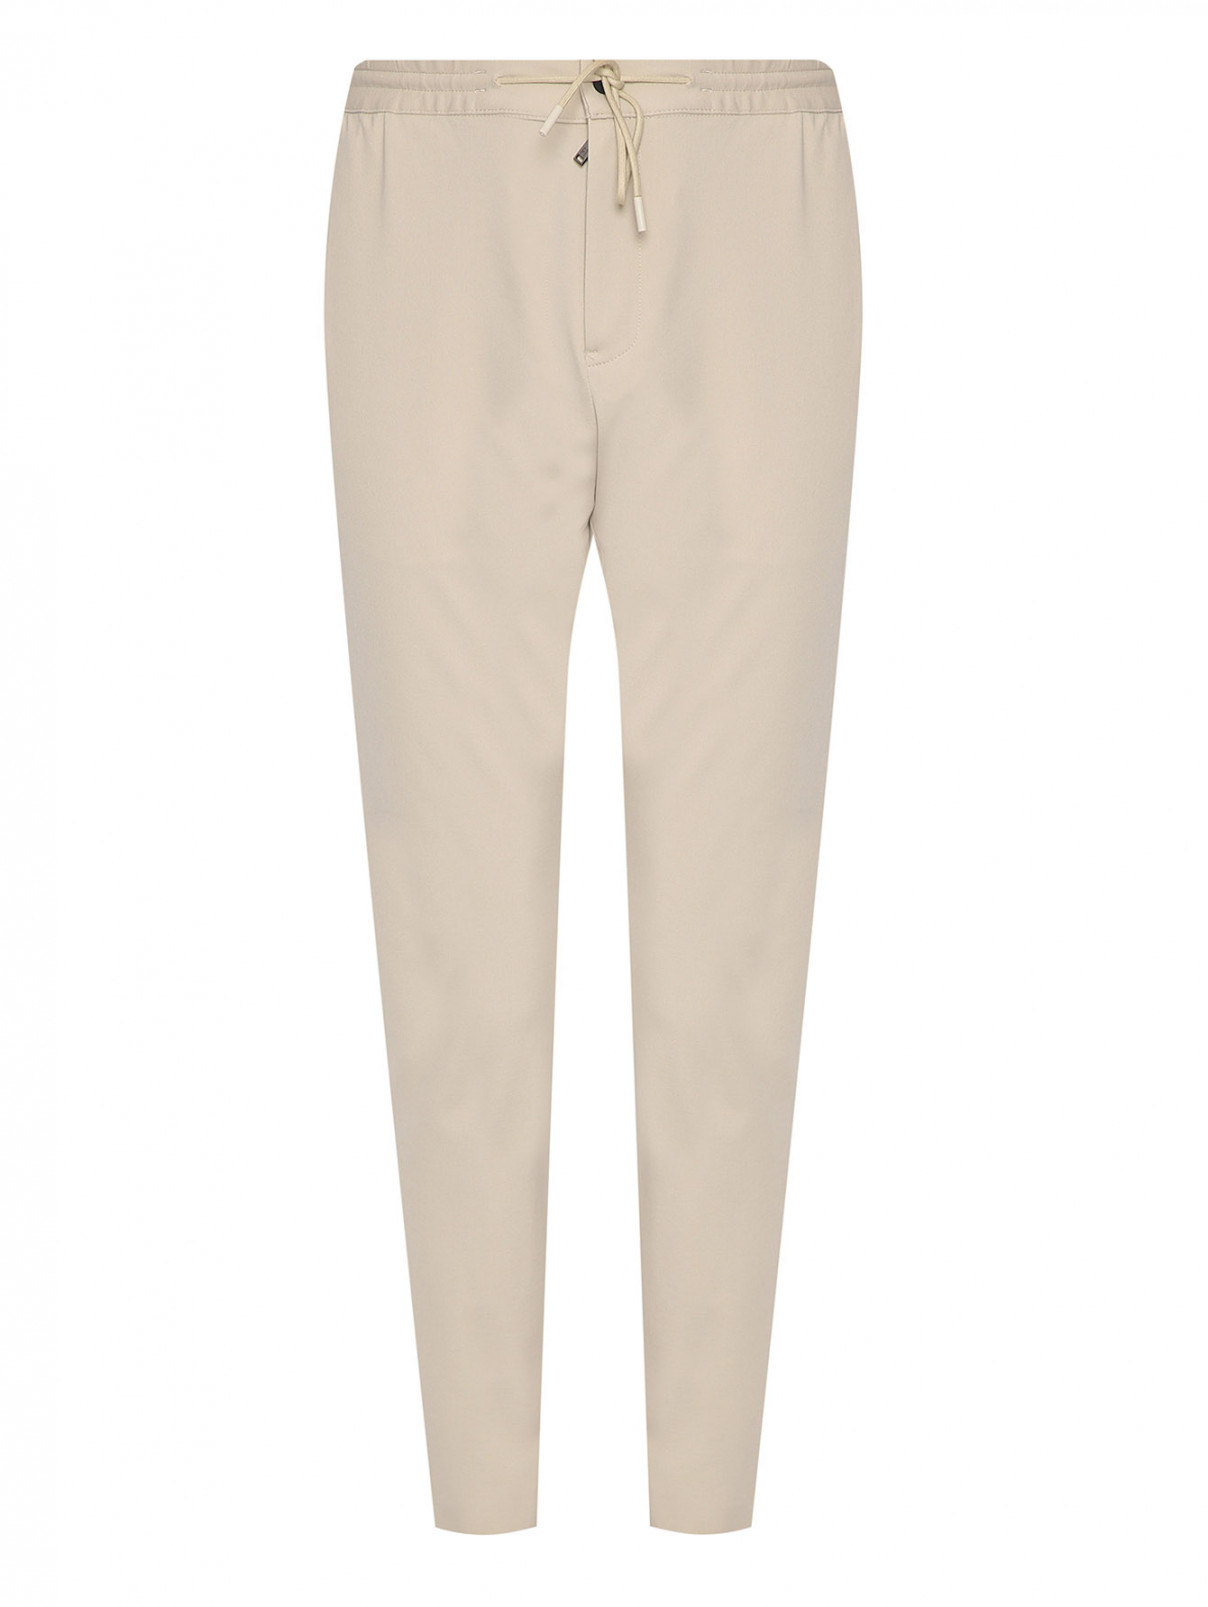 Трикотажные брюки на резинке с карманами PT Torino  –  Общий вид  – Цвет:  Бежевый